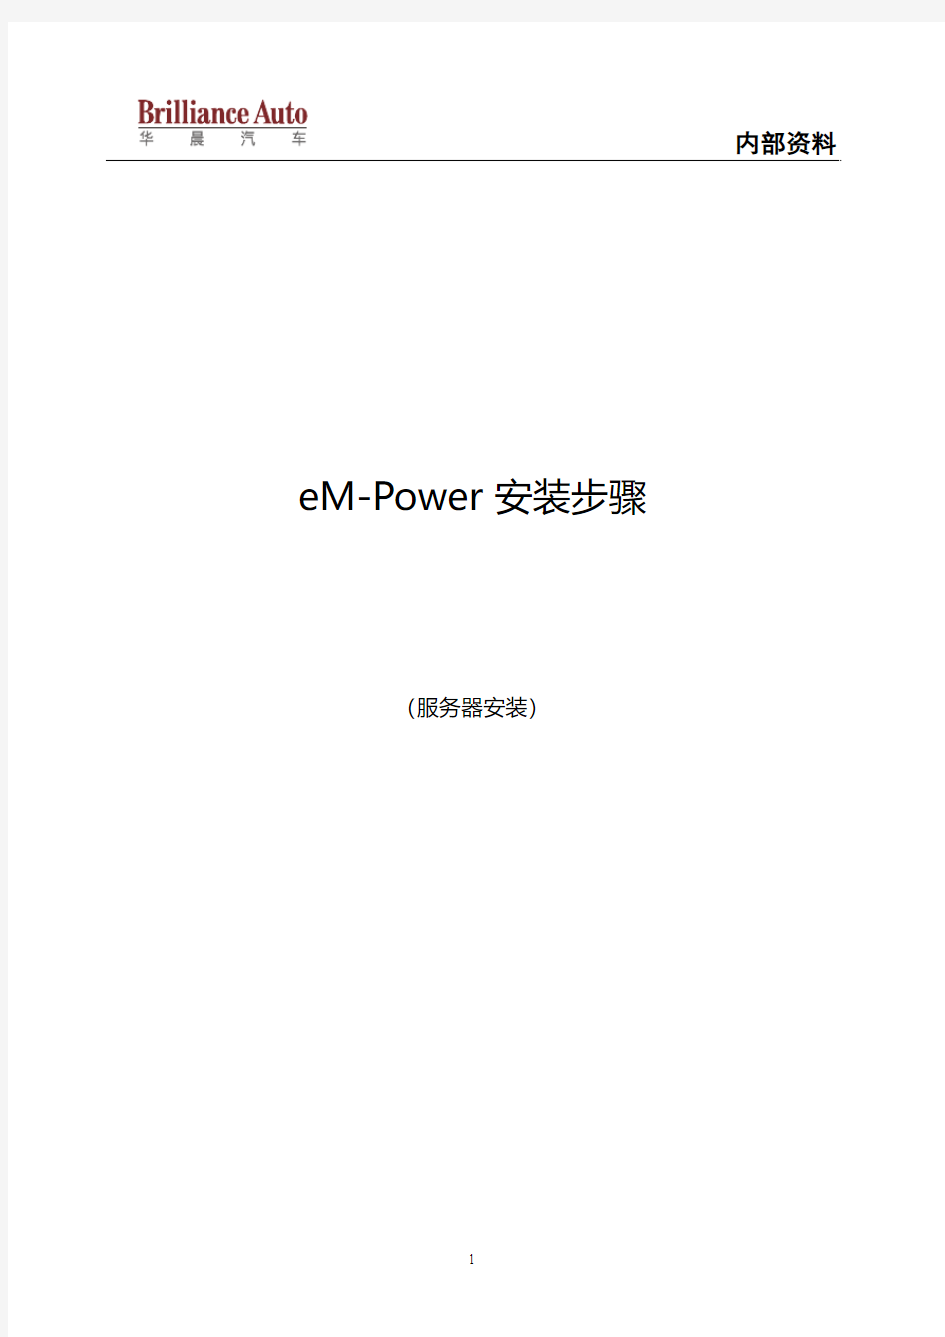 eM-Power9.0安装文档